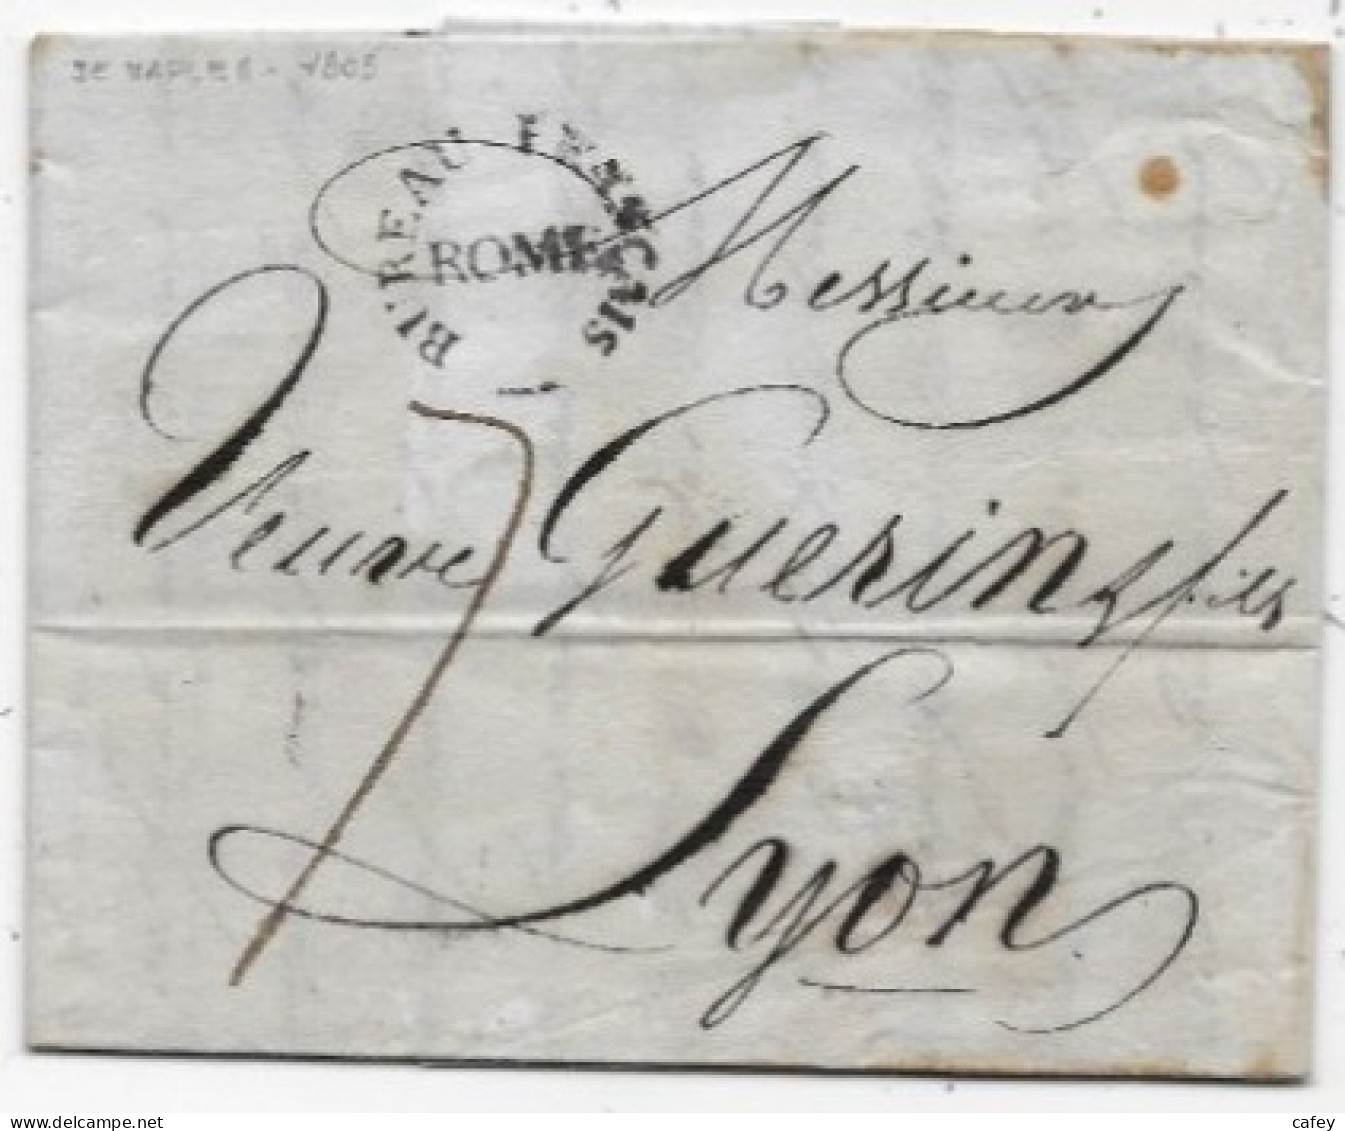 Lettre De NAPLES 1805 Cachet BUREAU FRANCAIS / ROME P / France - 1801-1848: Précurseurs XIX